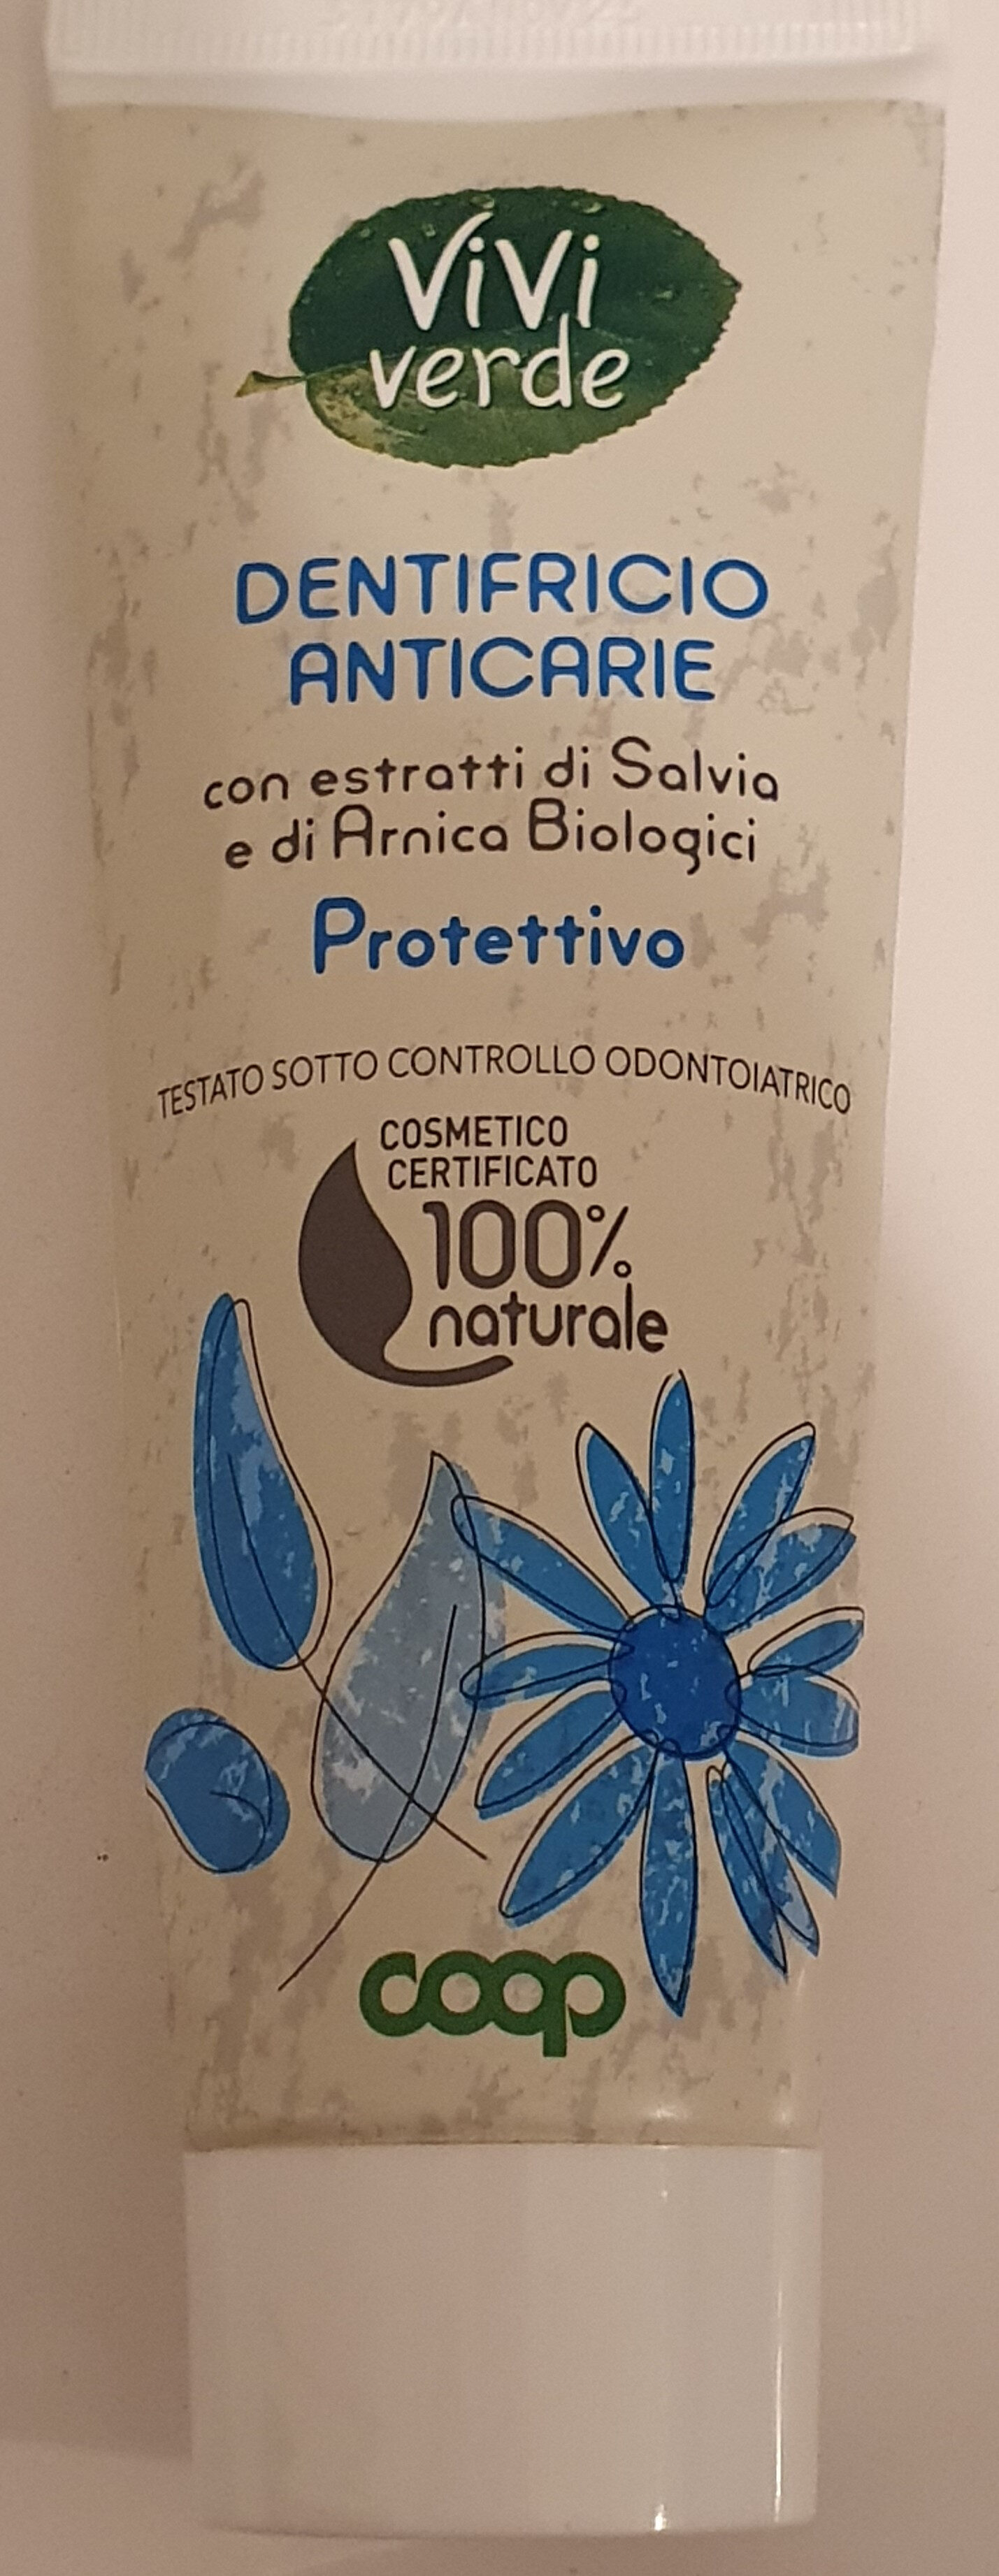 dentifricio anticarie - Product - it